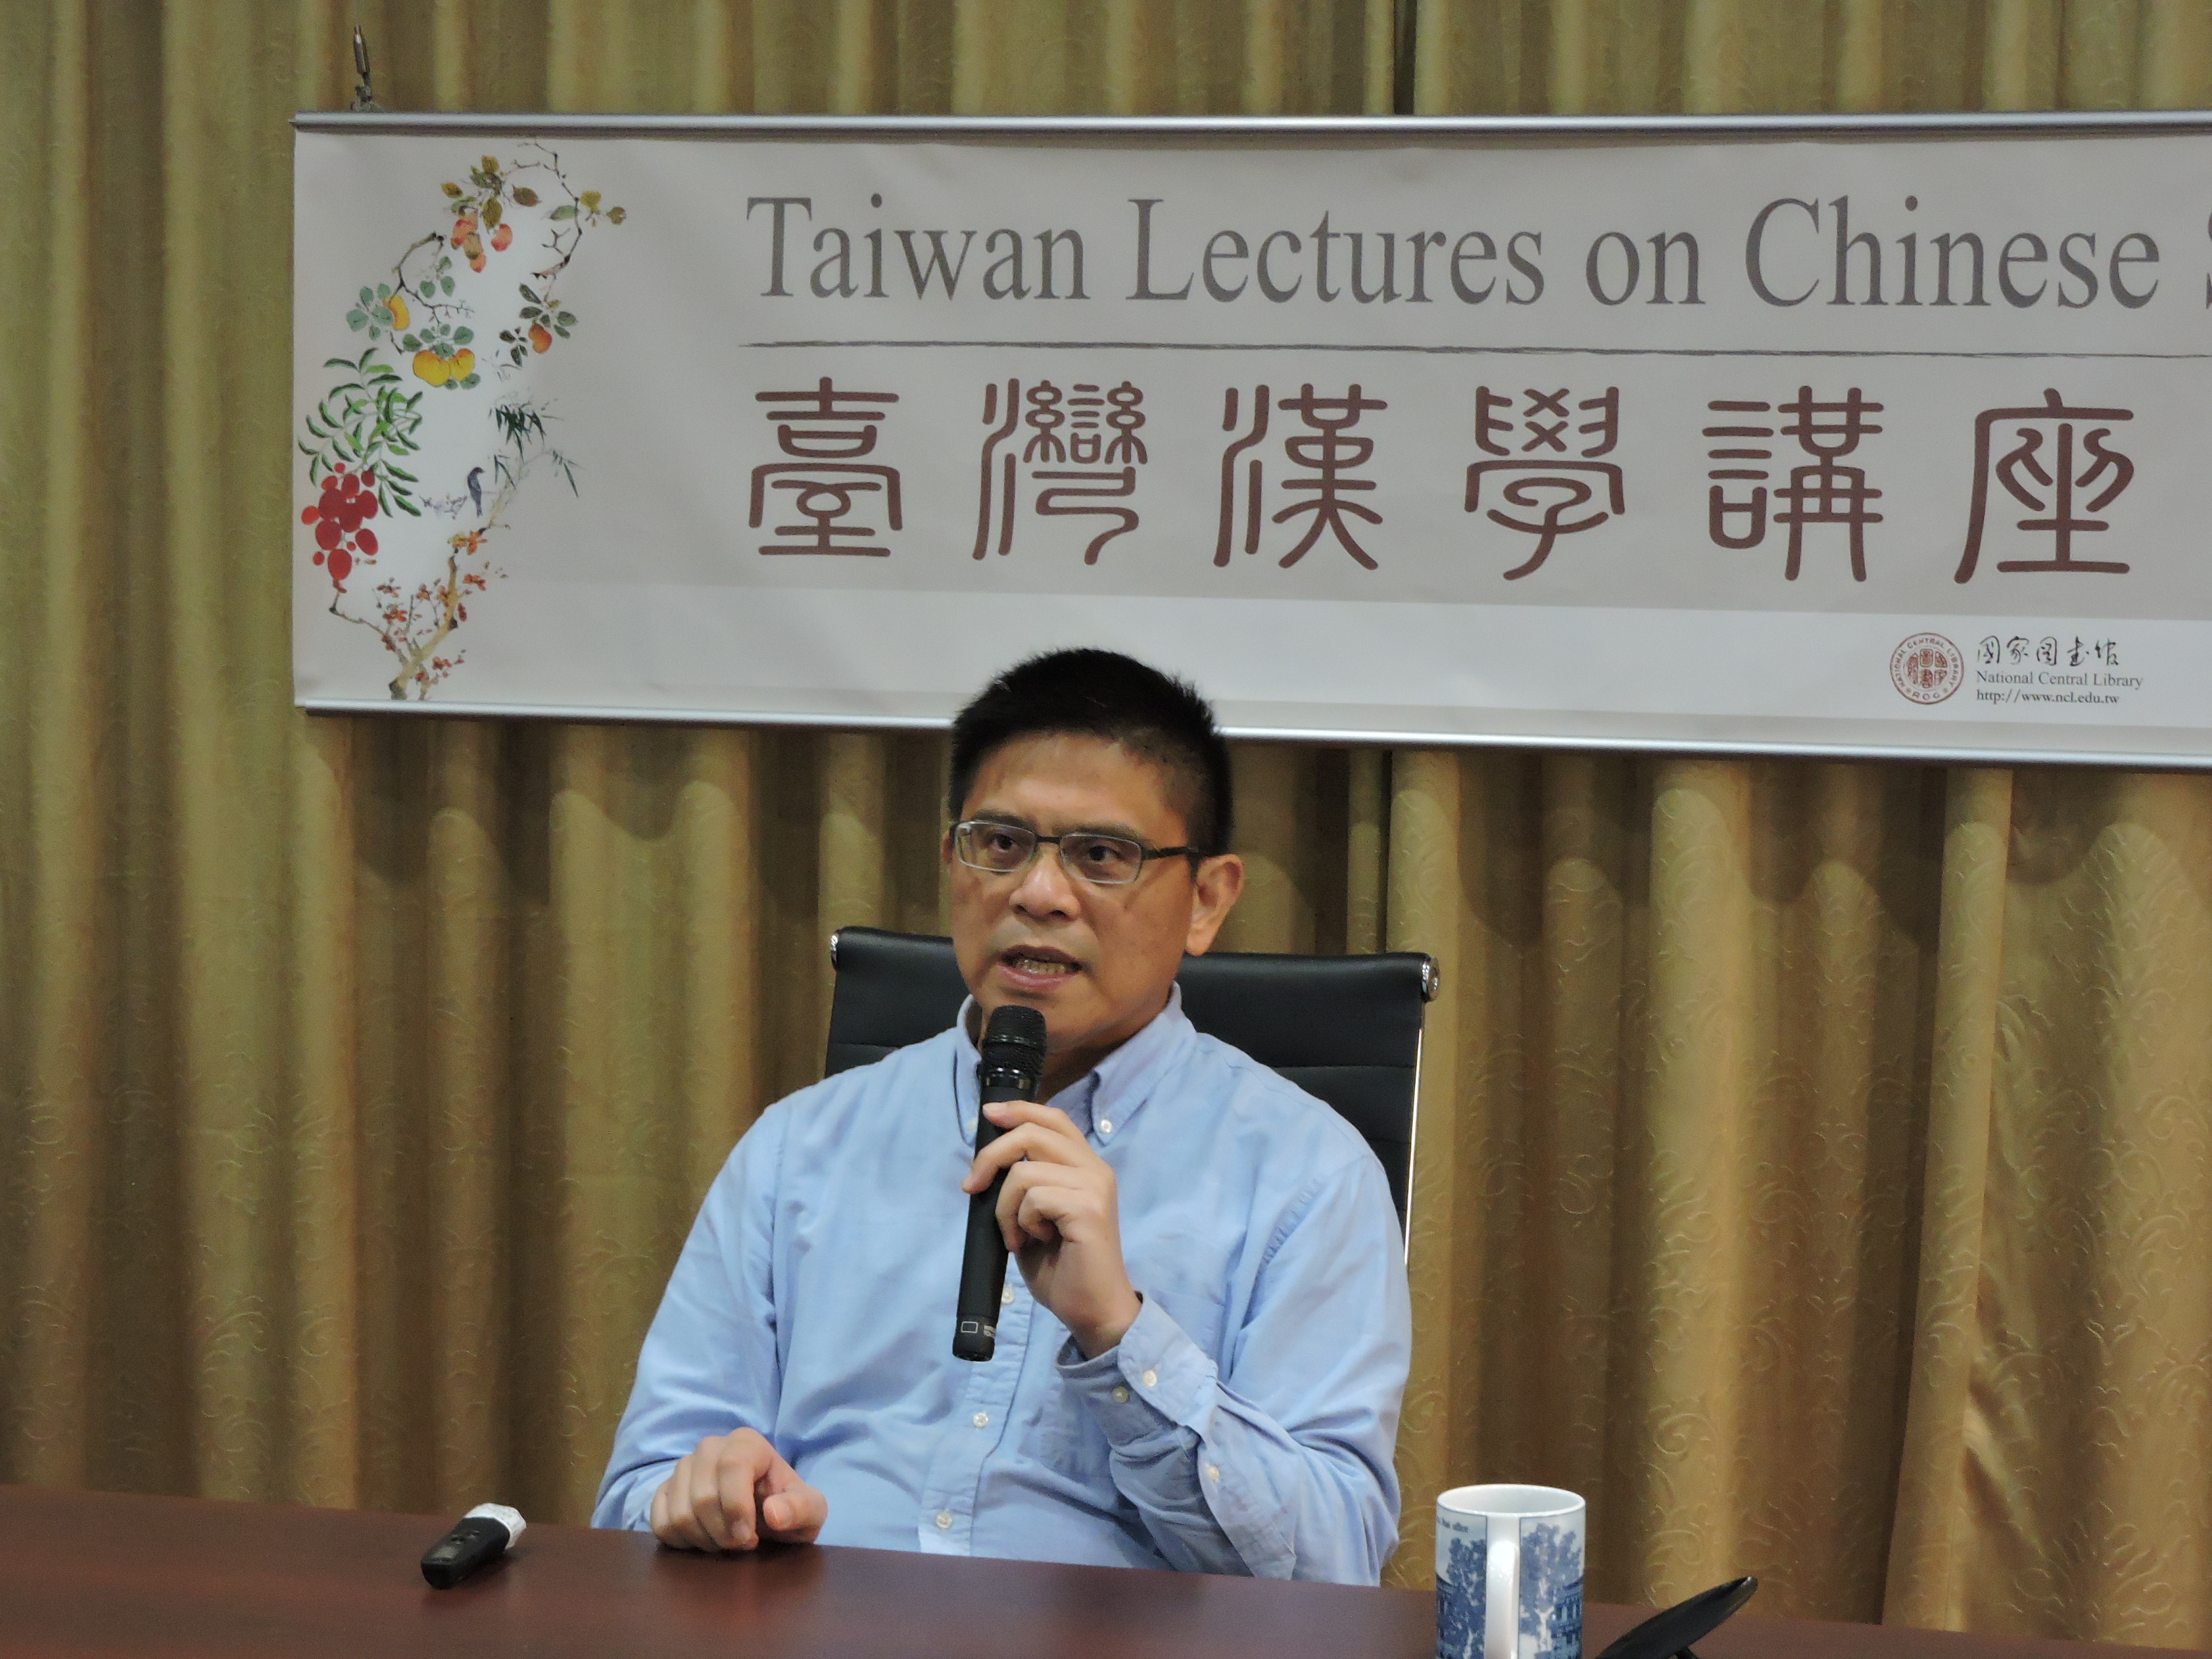 蔡志偉教授線上演講與多倫多大學合辦 (Professor Cai Zhiwei's online speech co-organized with the University of Toronto)